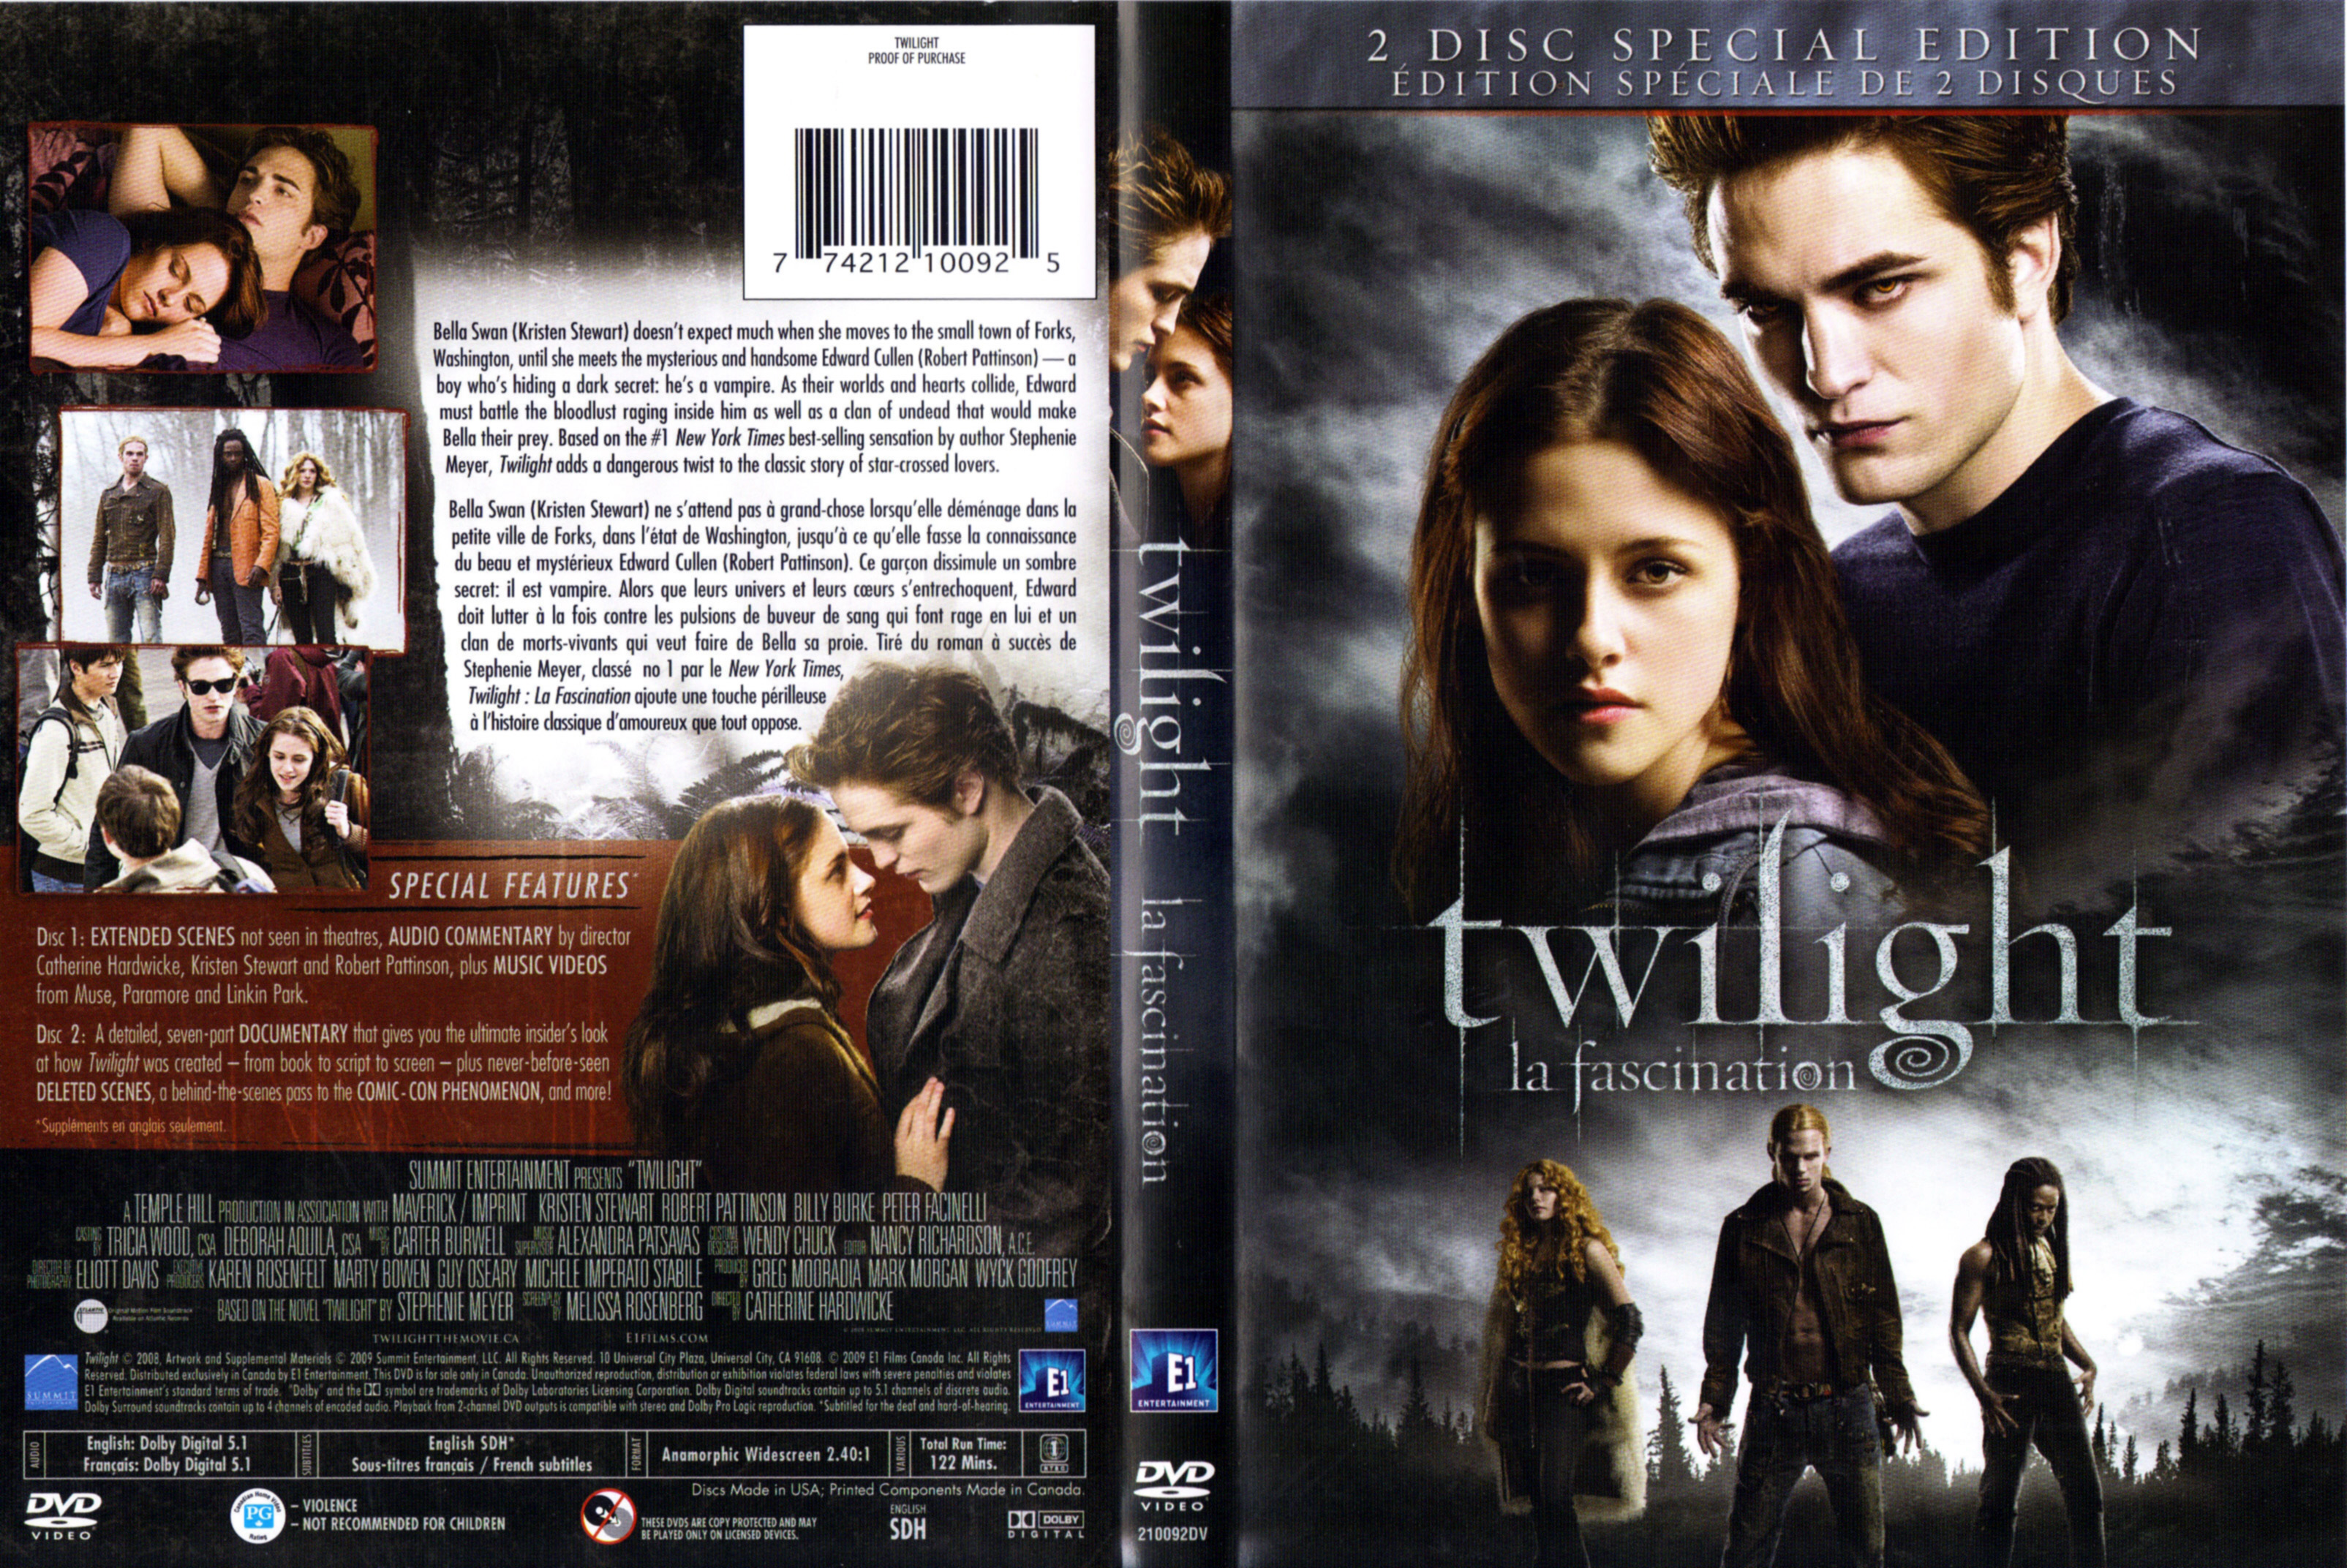 Jaquette DVD Twilight - La fascination (Canadienne)